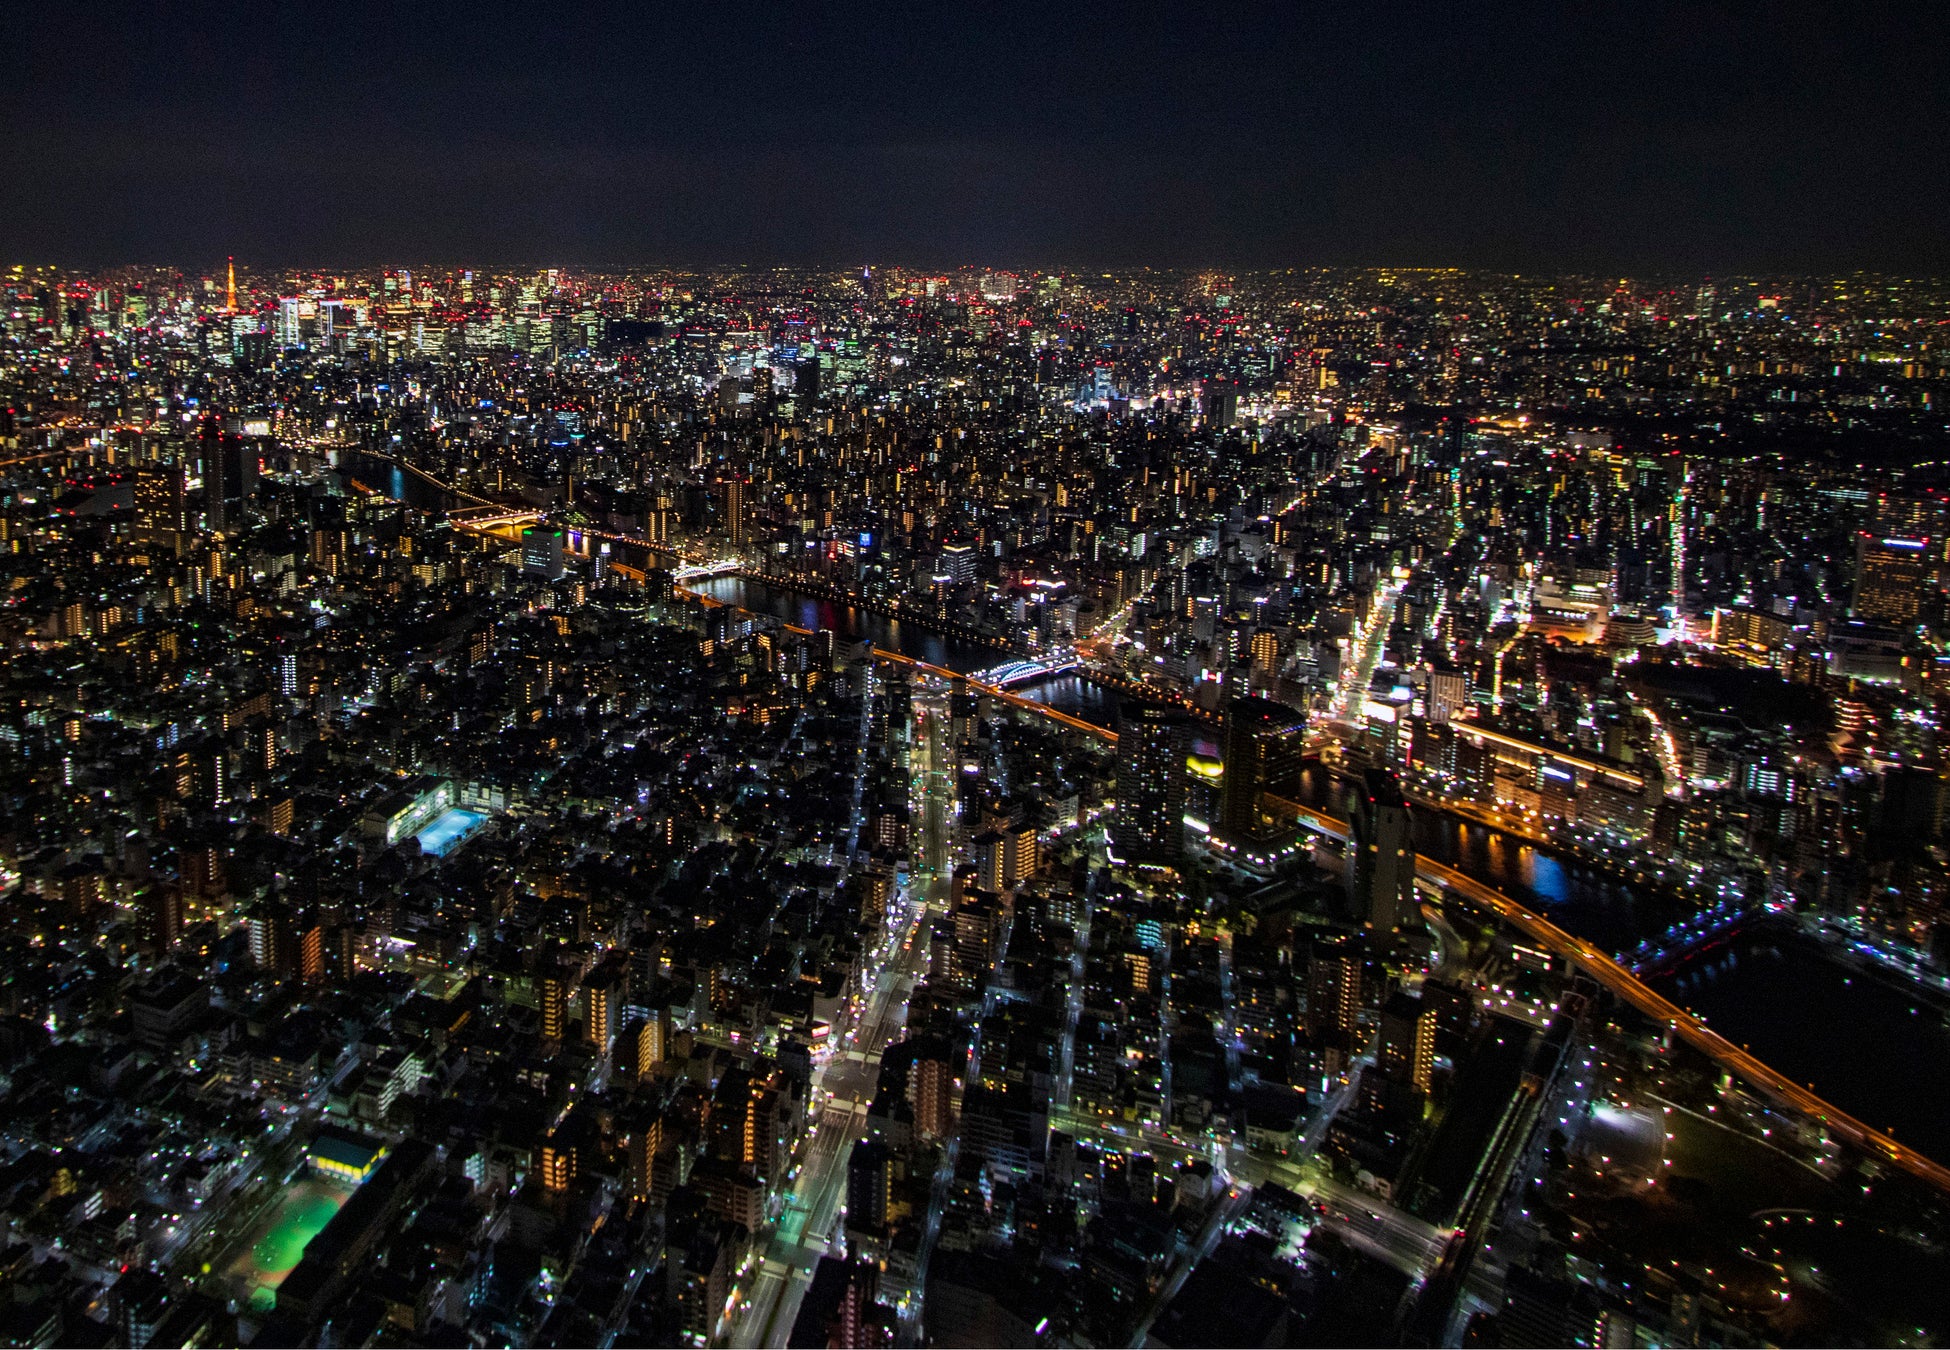 お得に美しい夜景を楽しもう 東京スカイツリー R 夜割キャンペーン を実施 東京スカイツリータウンのプレスリリース